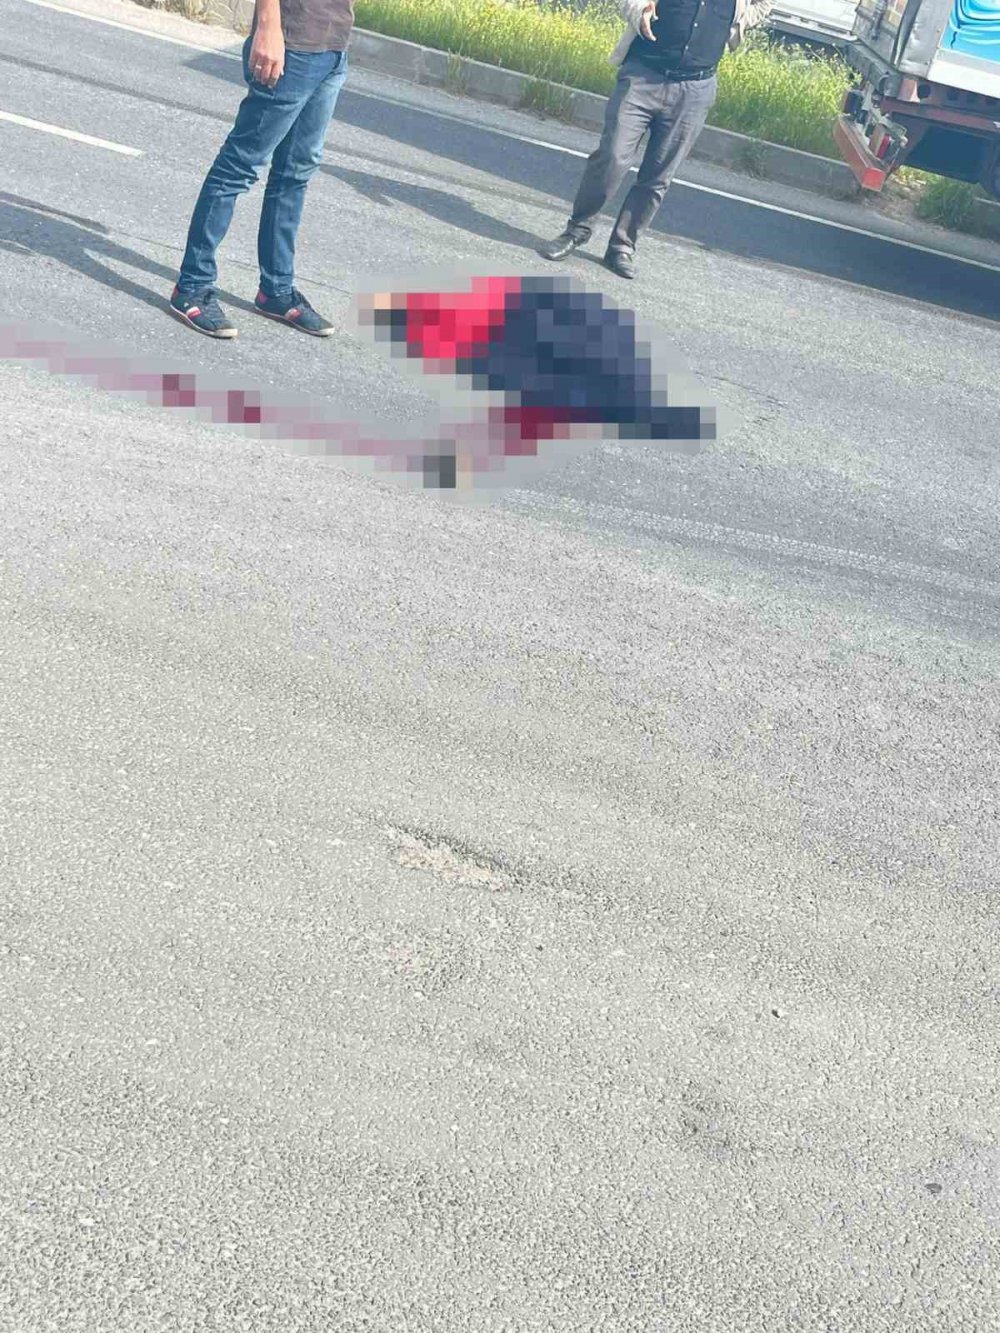 Mardin’de aynı güzergahta 3 farklı kaza: 3 ölü, 8 yaralı